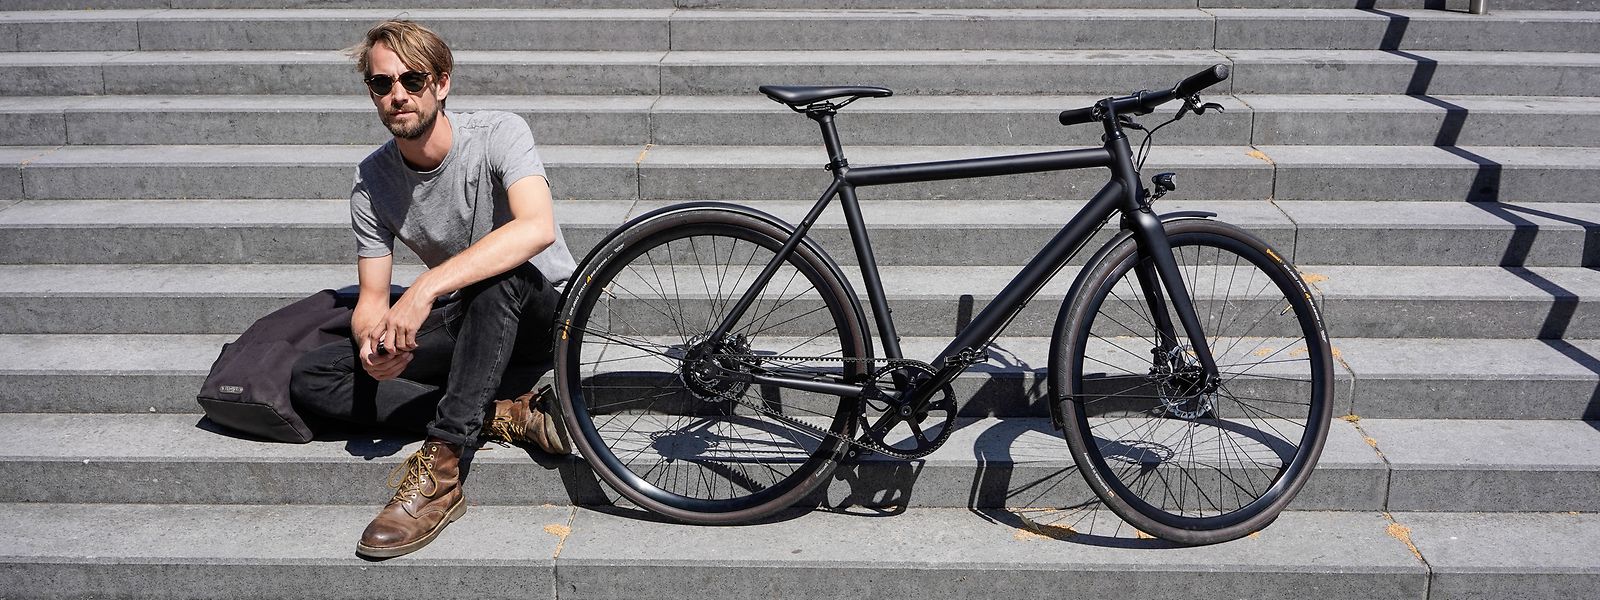 Das Urbanbike Curt aus dem Hause Ampler sieht schick aus und wiegt gerade einmal 13,5 Kilogramm.